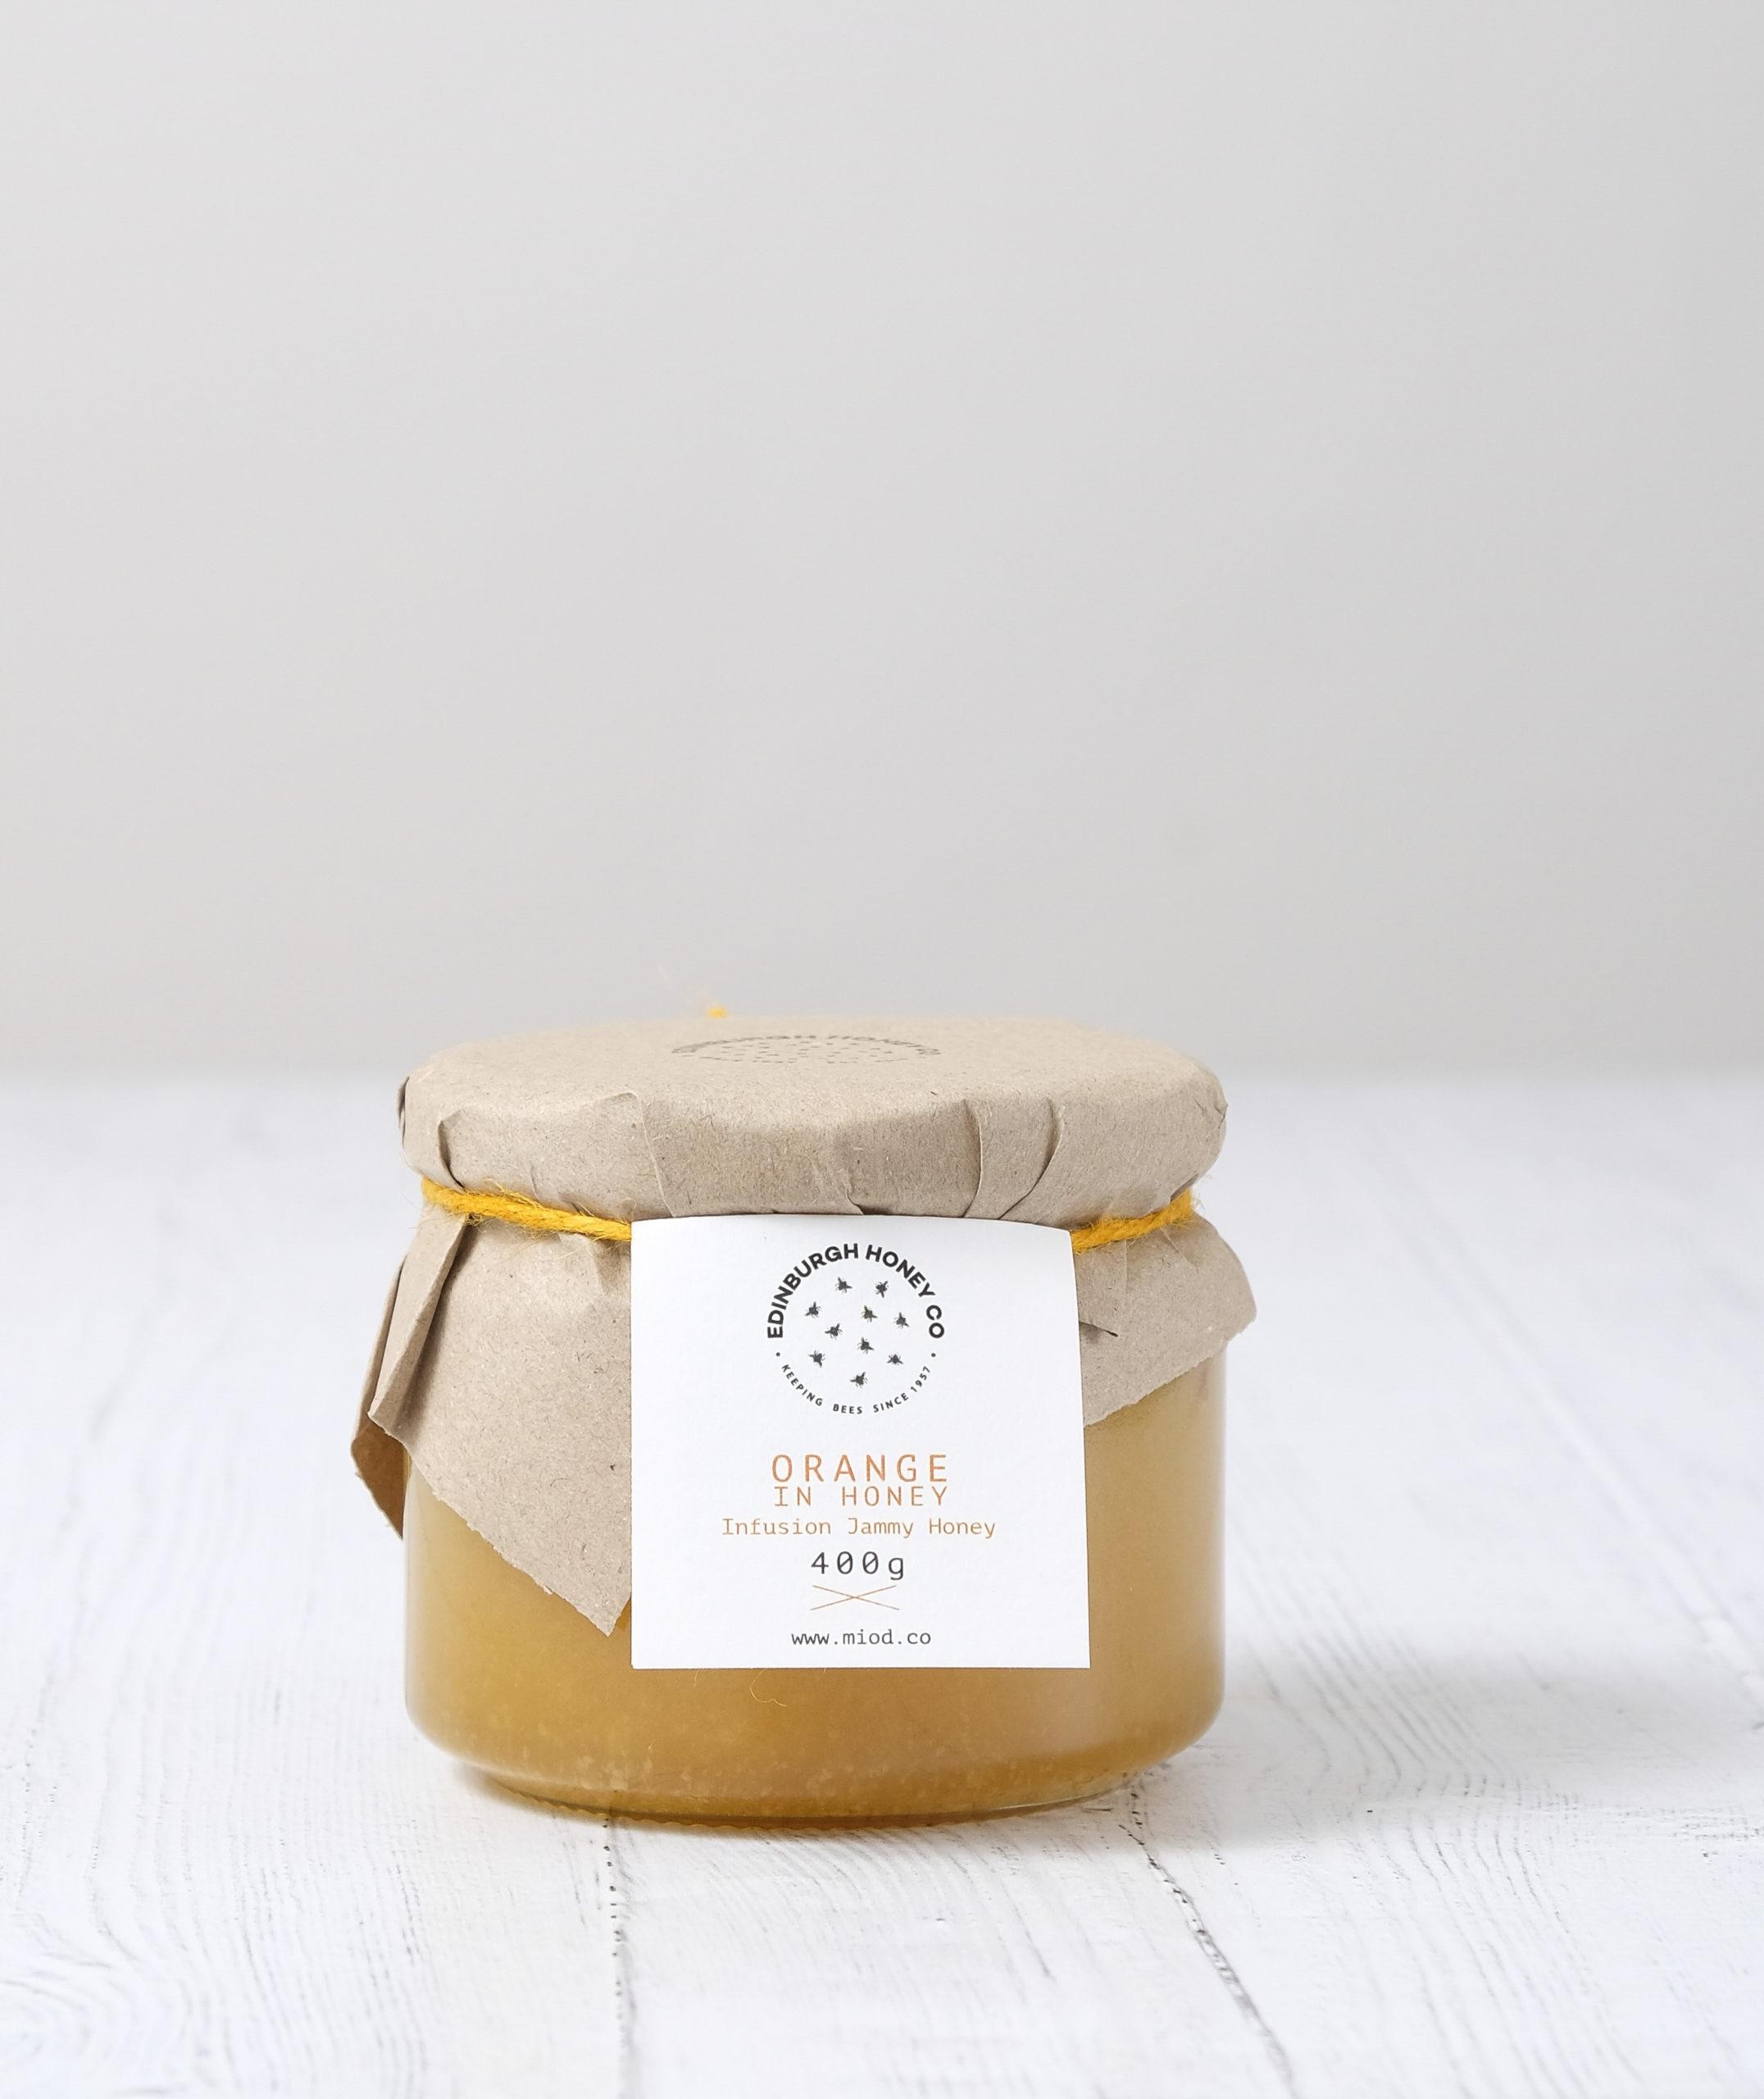 Edinburgh Honey Co. - Orange Infused Honey